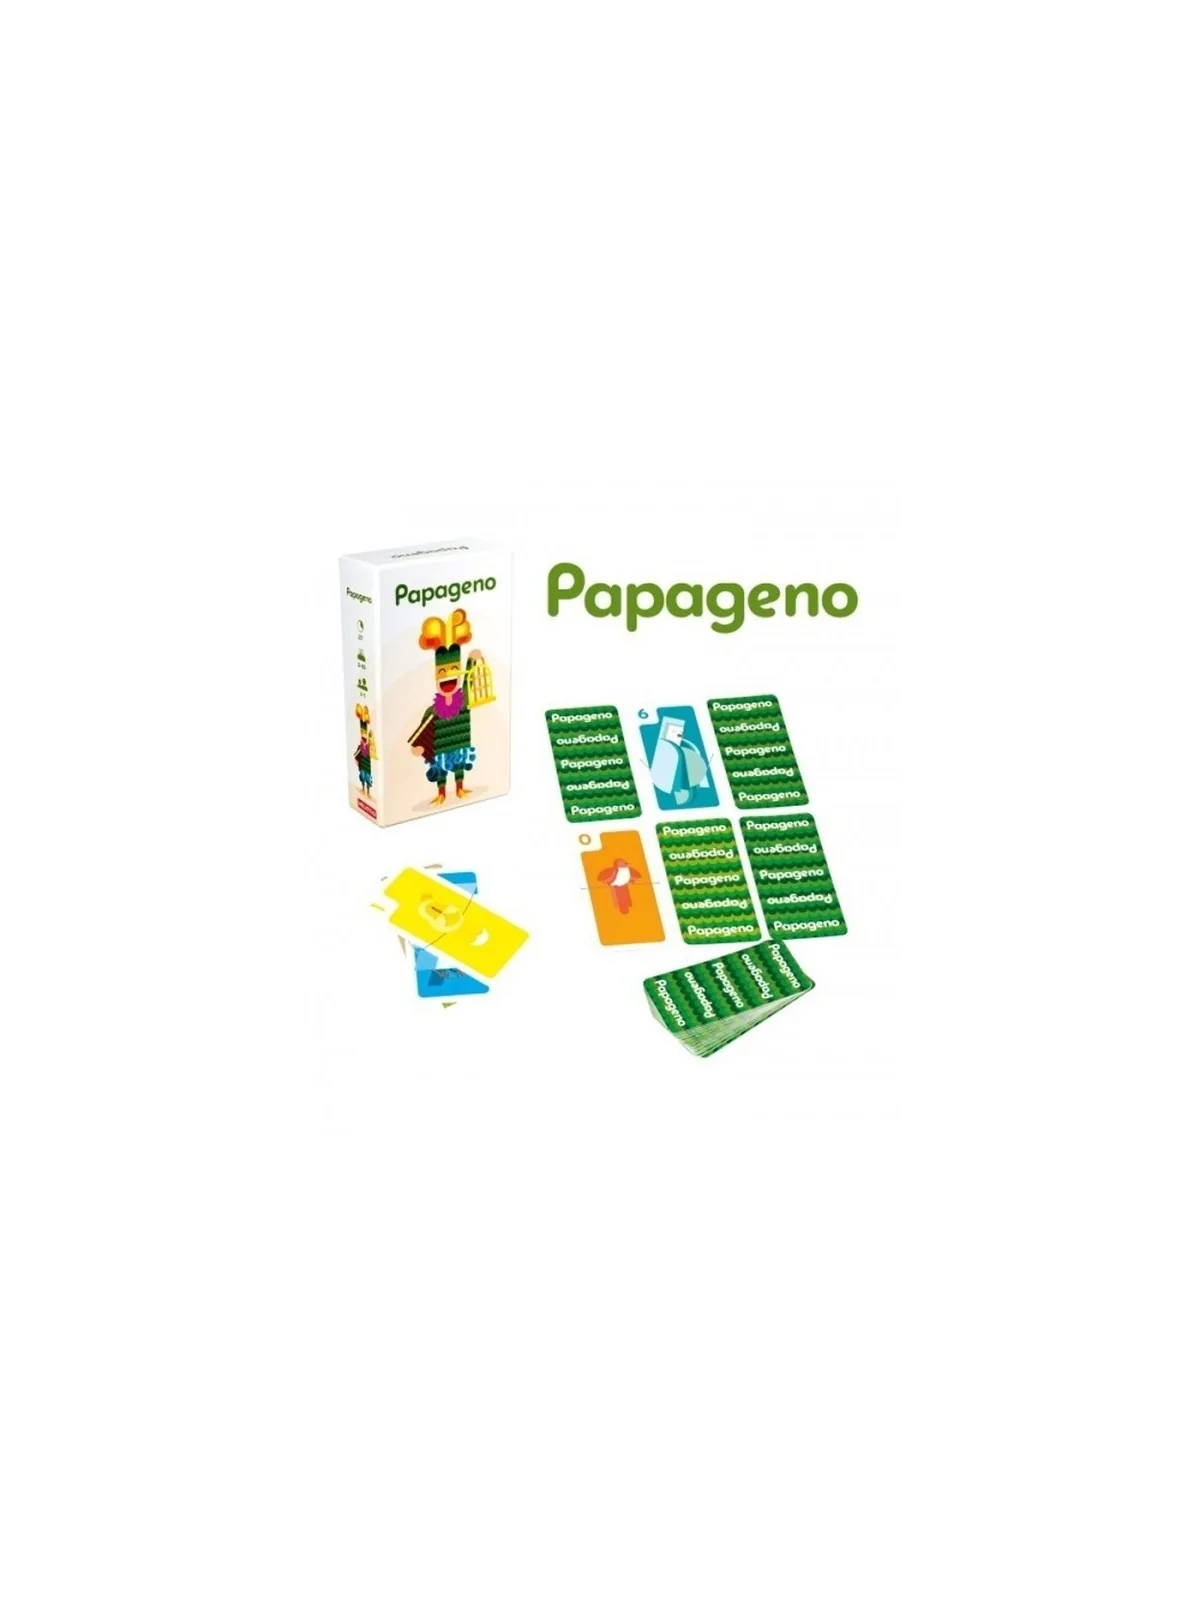 Comprar Papageno barato al mejor precio 11,65 € de TCG Factory